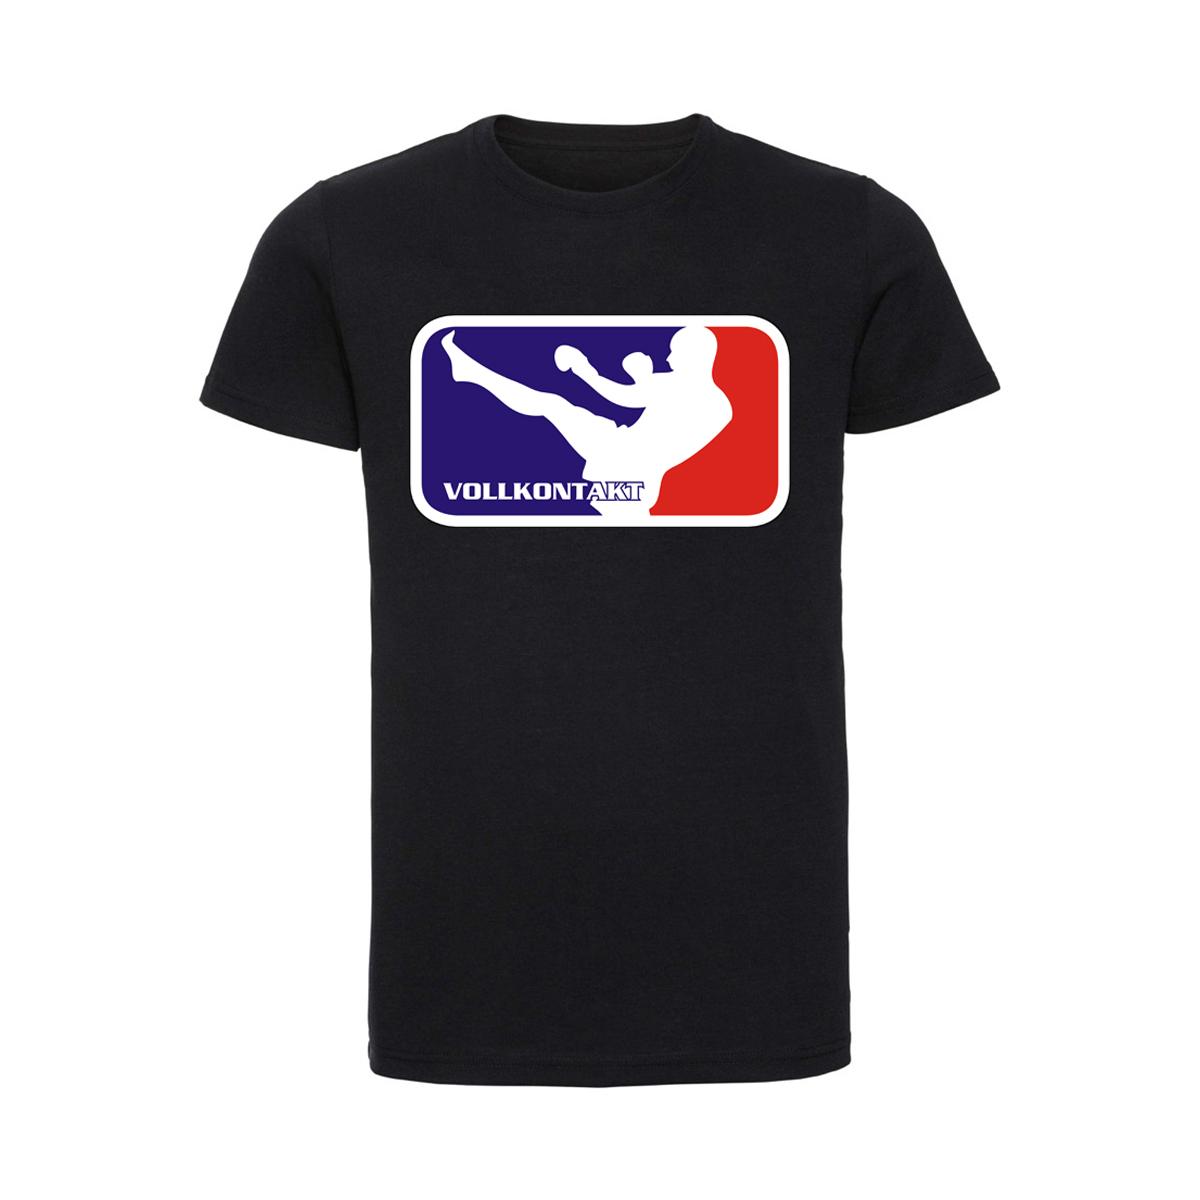 Full Contact League - Vollkontakt - Männer T-Shirt - schwarz